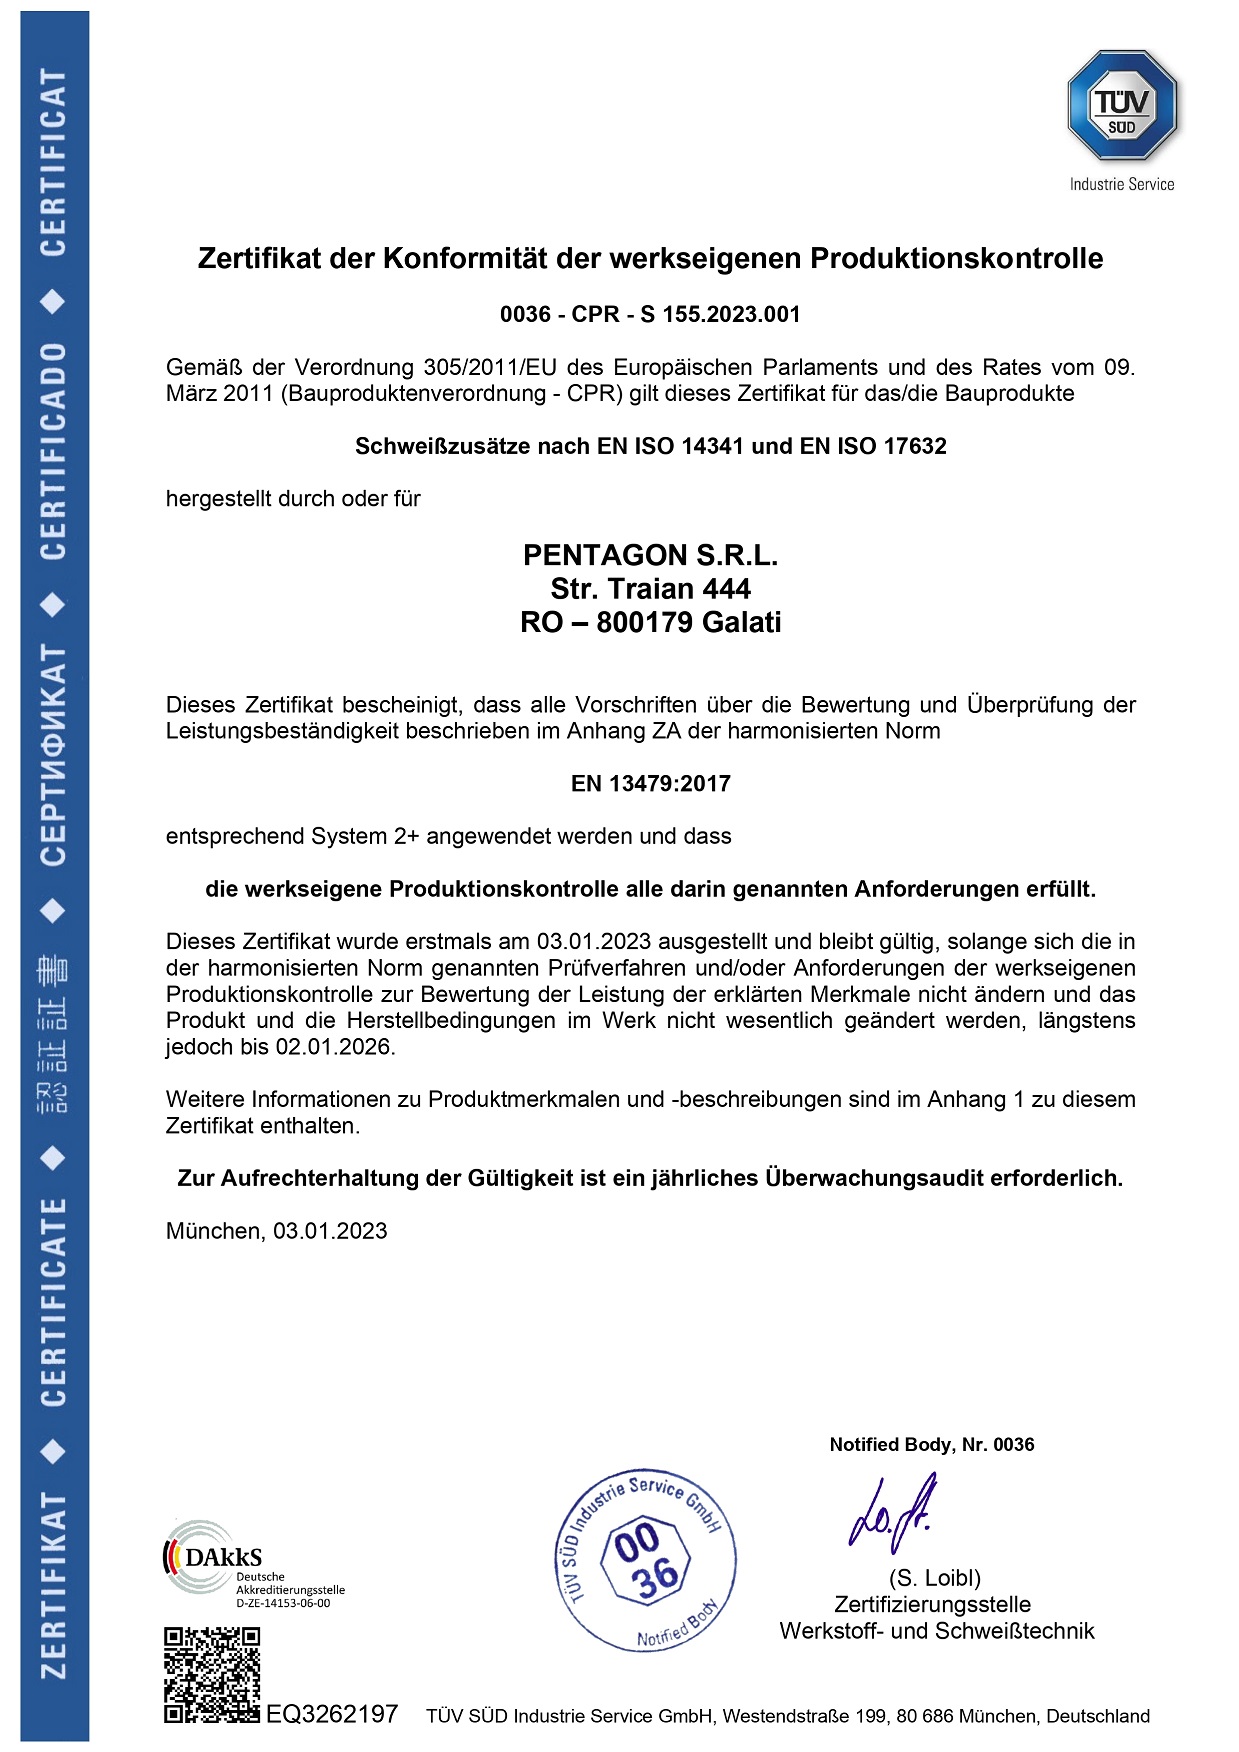 Certificat de conformitate al controlului producției din fabrică Pentagon Romania